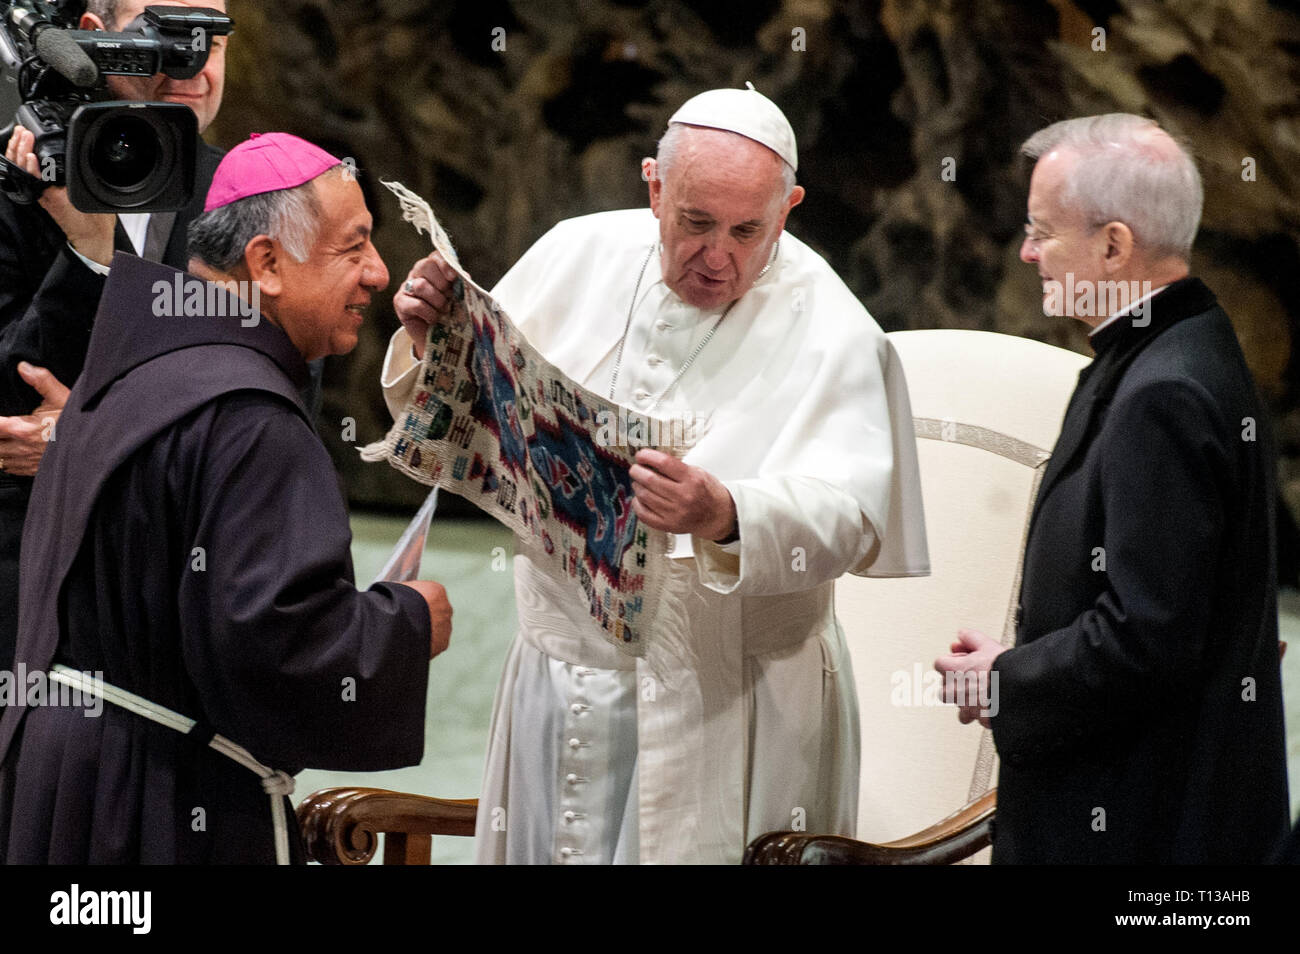 Le pape François reçoit un cadeau d'un évêque franciscain au cours de  l'audience générale hebdomadaire dans la Salle Paul VI au Vatican. Comprend  : Le Pape François Où : Rome, Italie Quand :